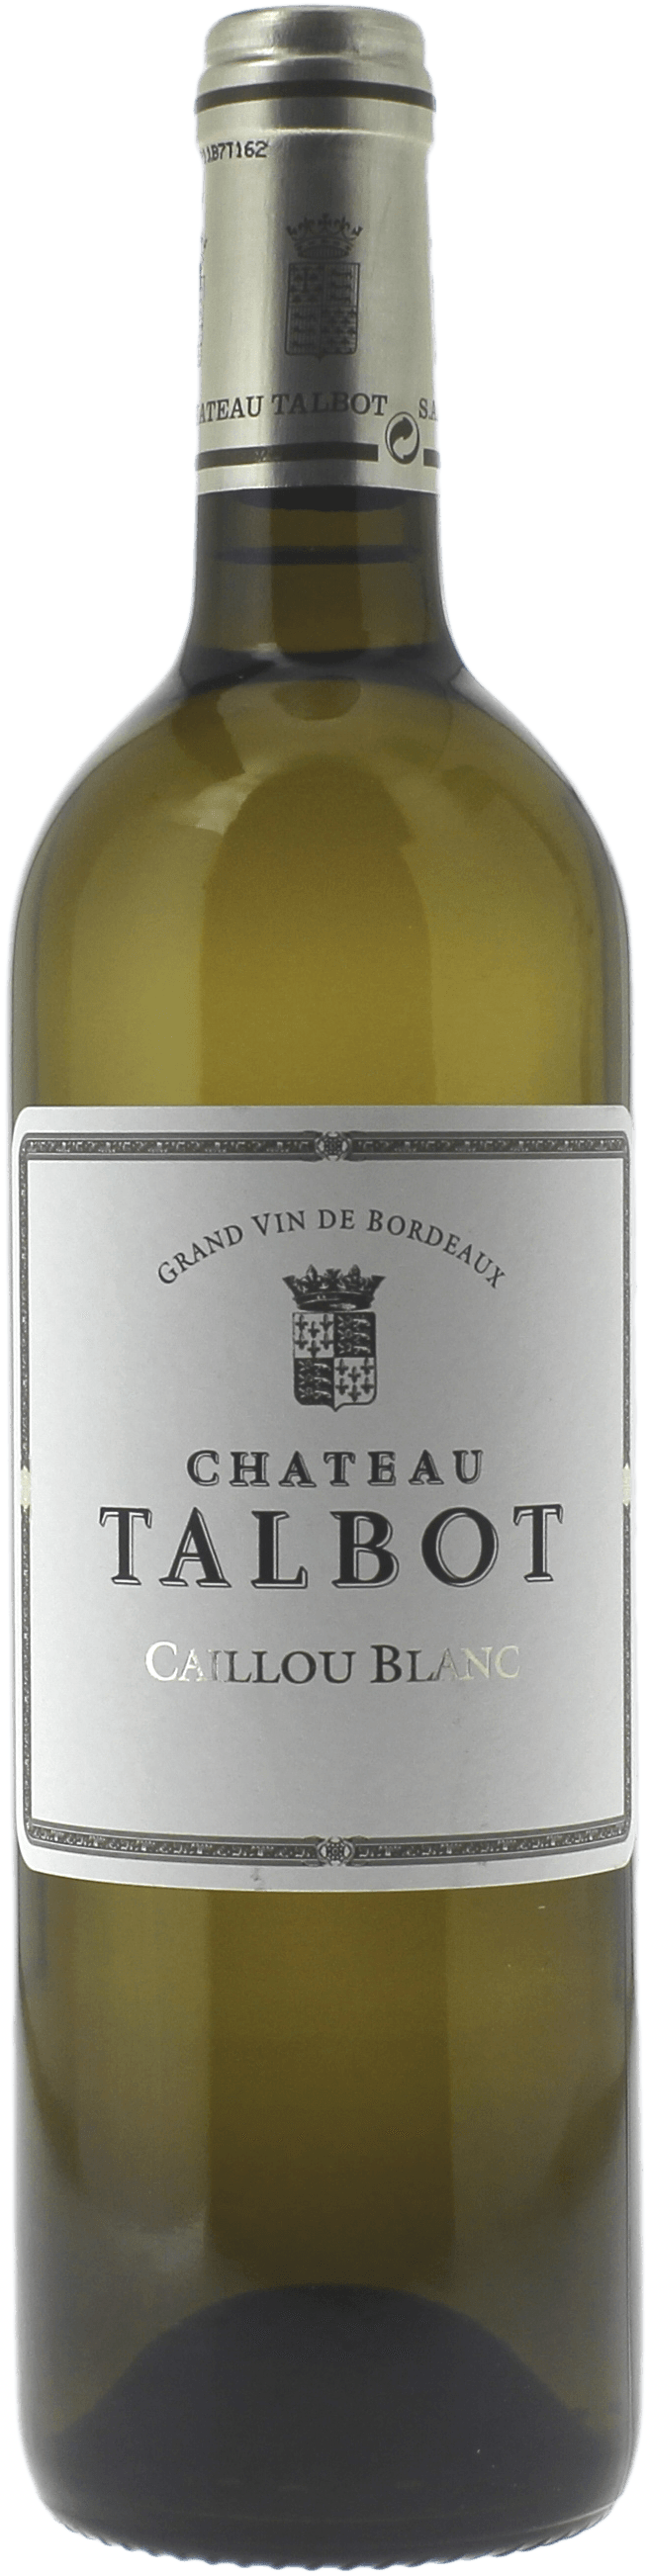 Caillou blanc du chteau talbot 1999  Saint Julien, Bordeaux blanc